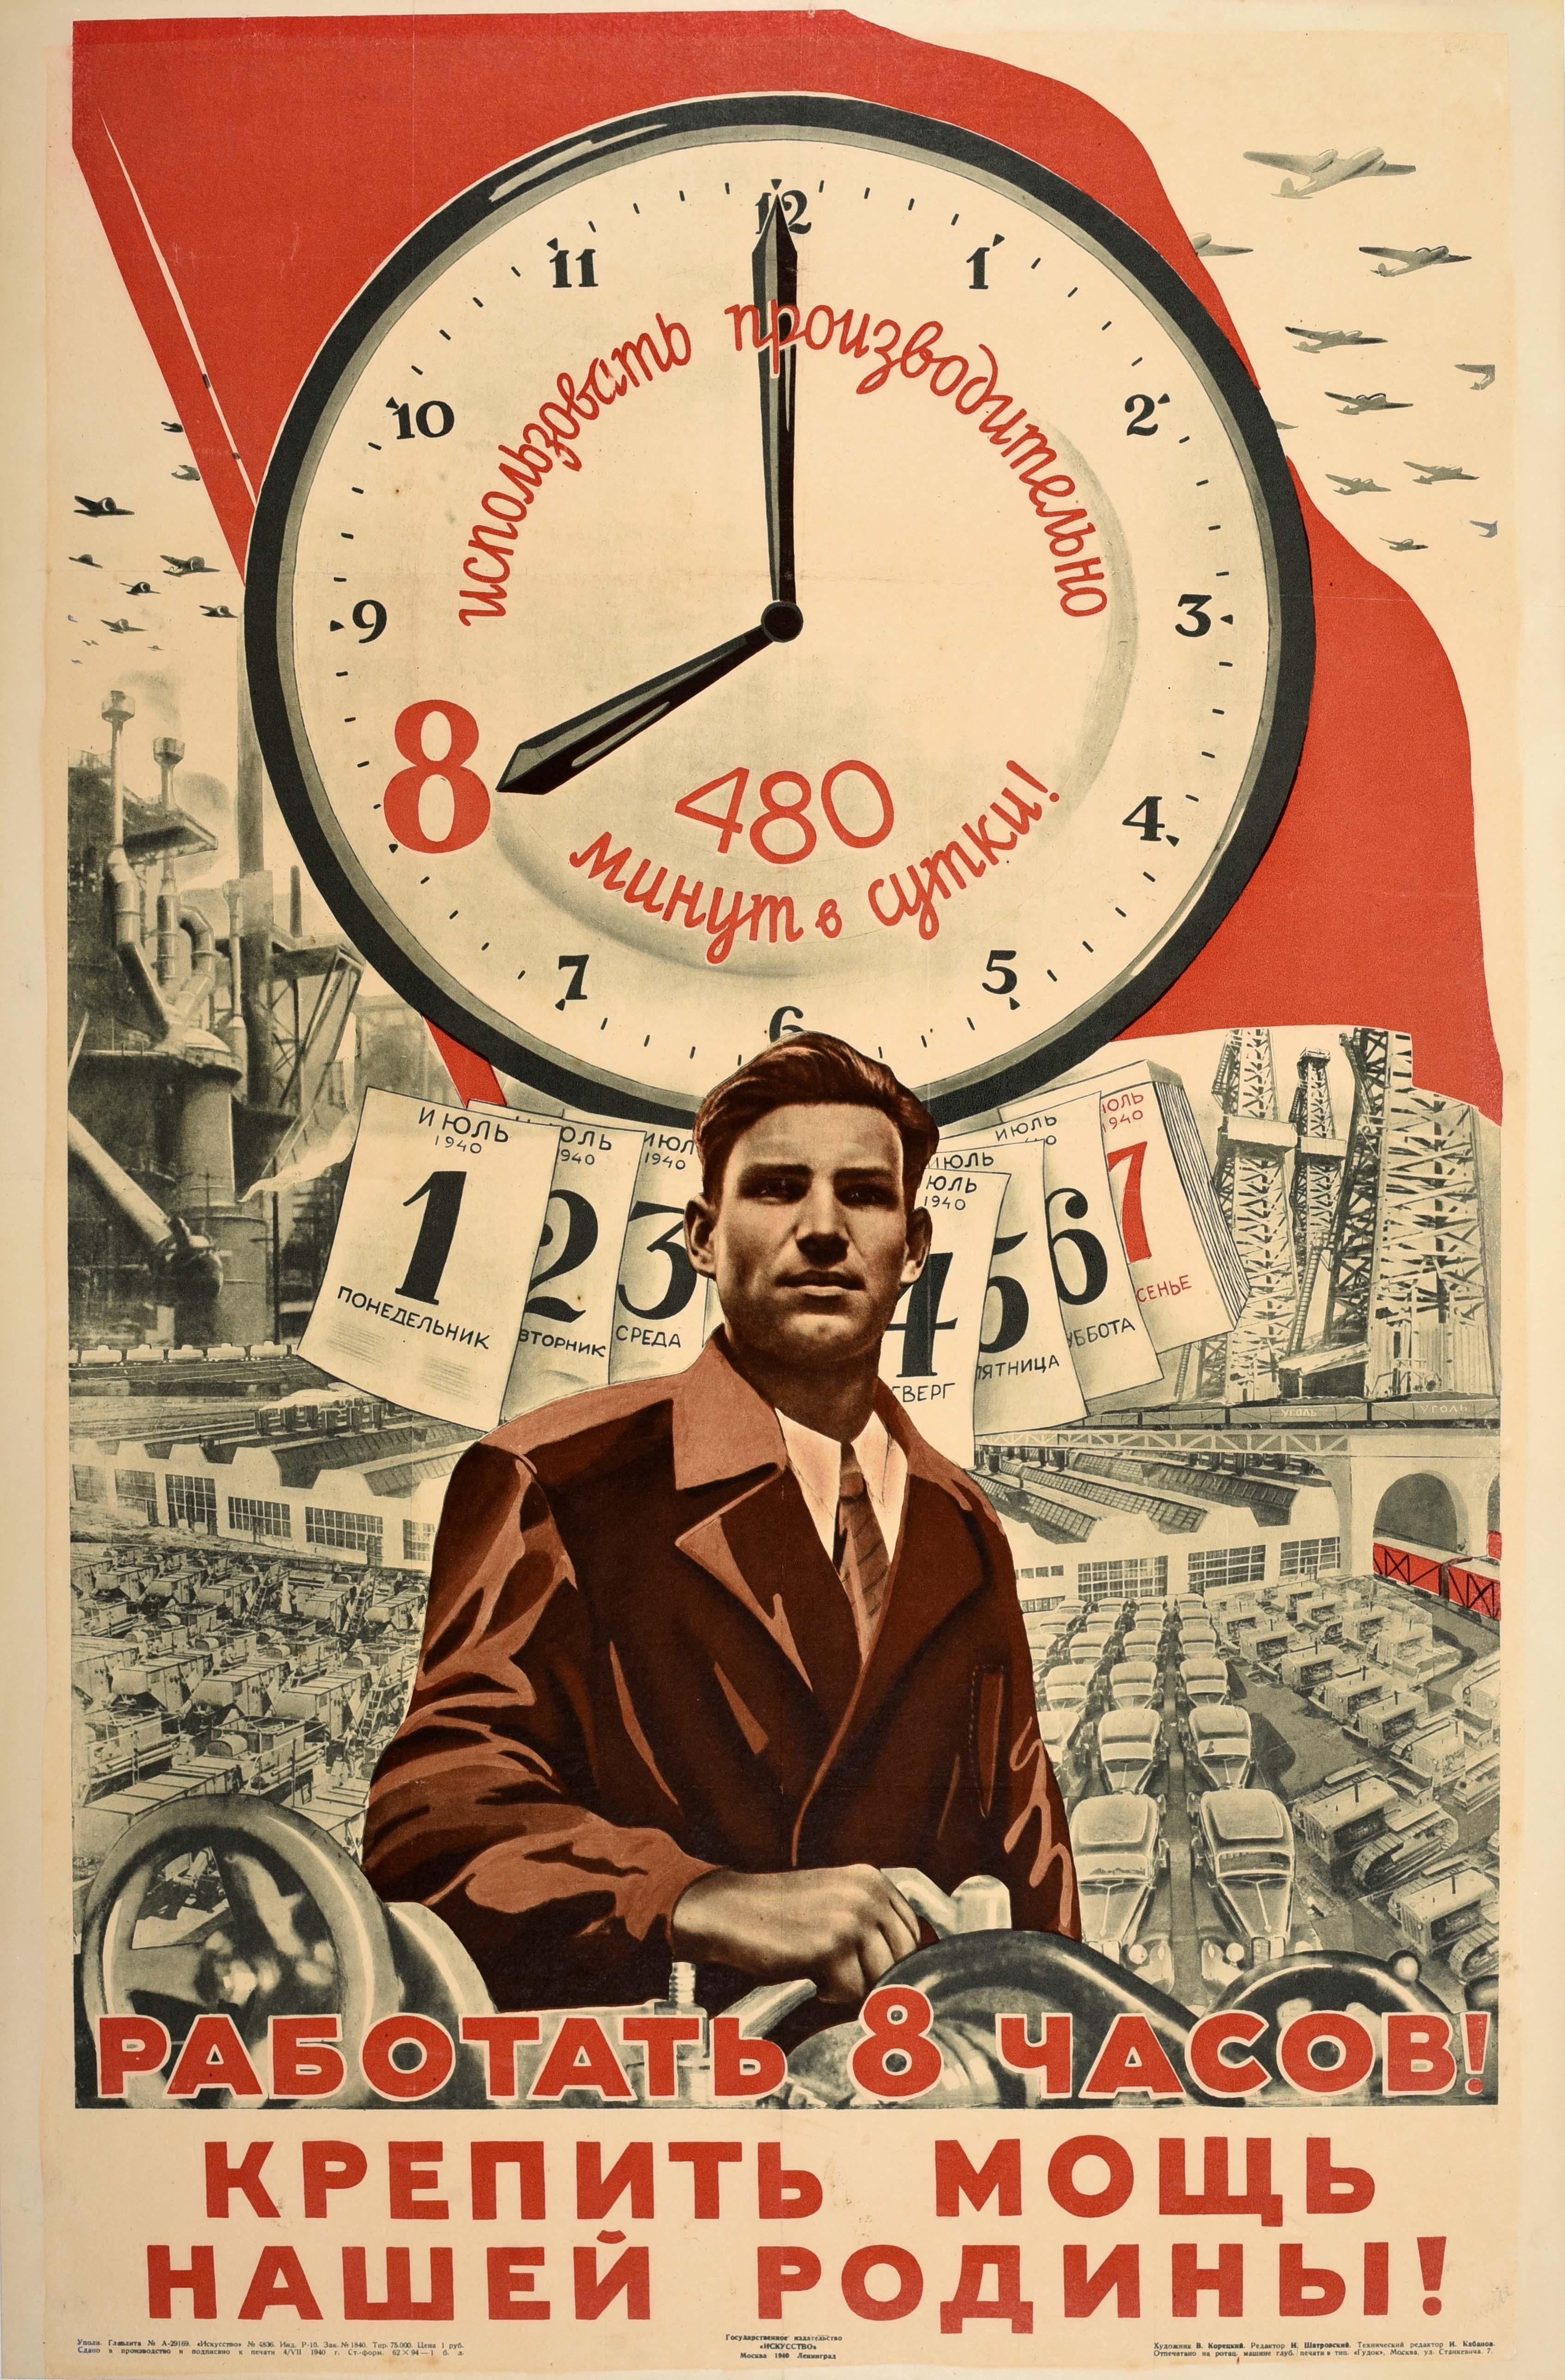 Viktor Koretsky  Print - Original Vintage WWII Propaganda Poster Work 8 Hours Strengthen Motherland USSR